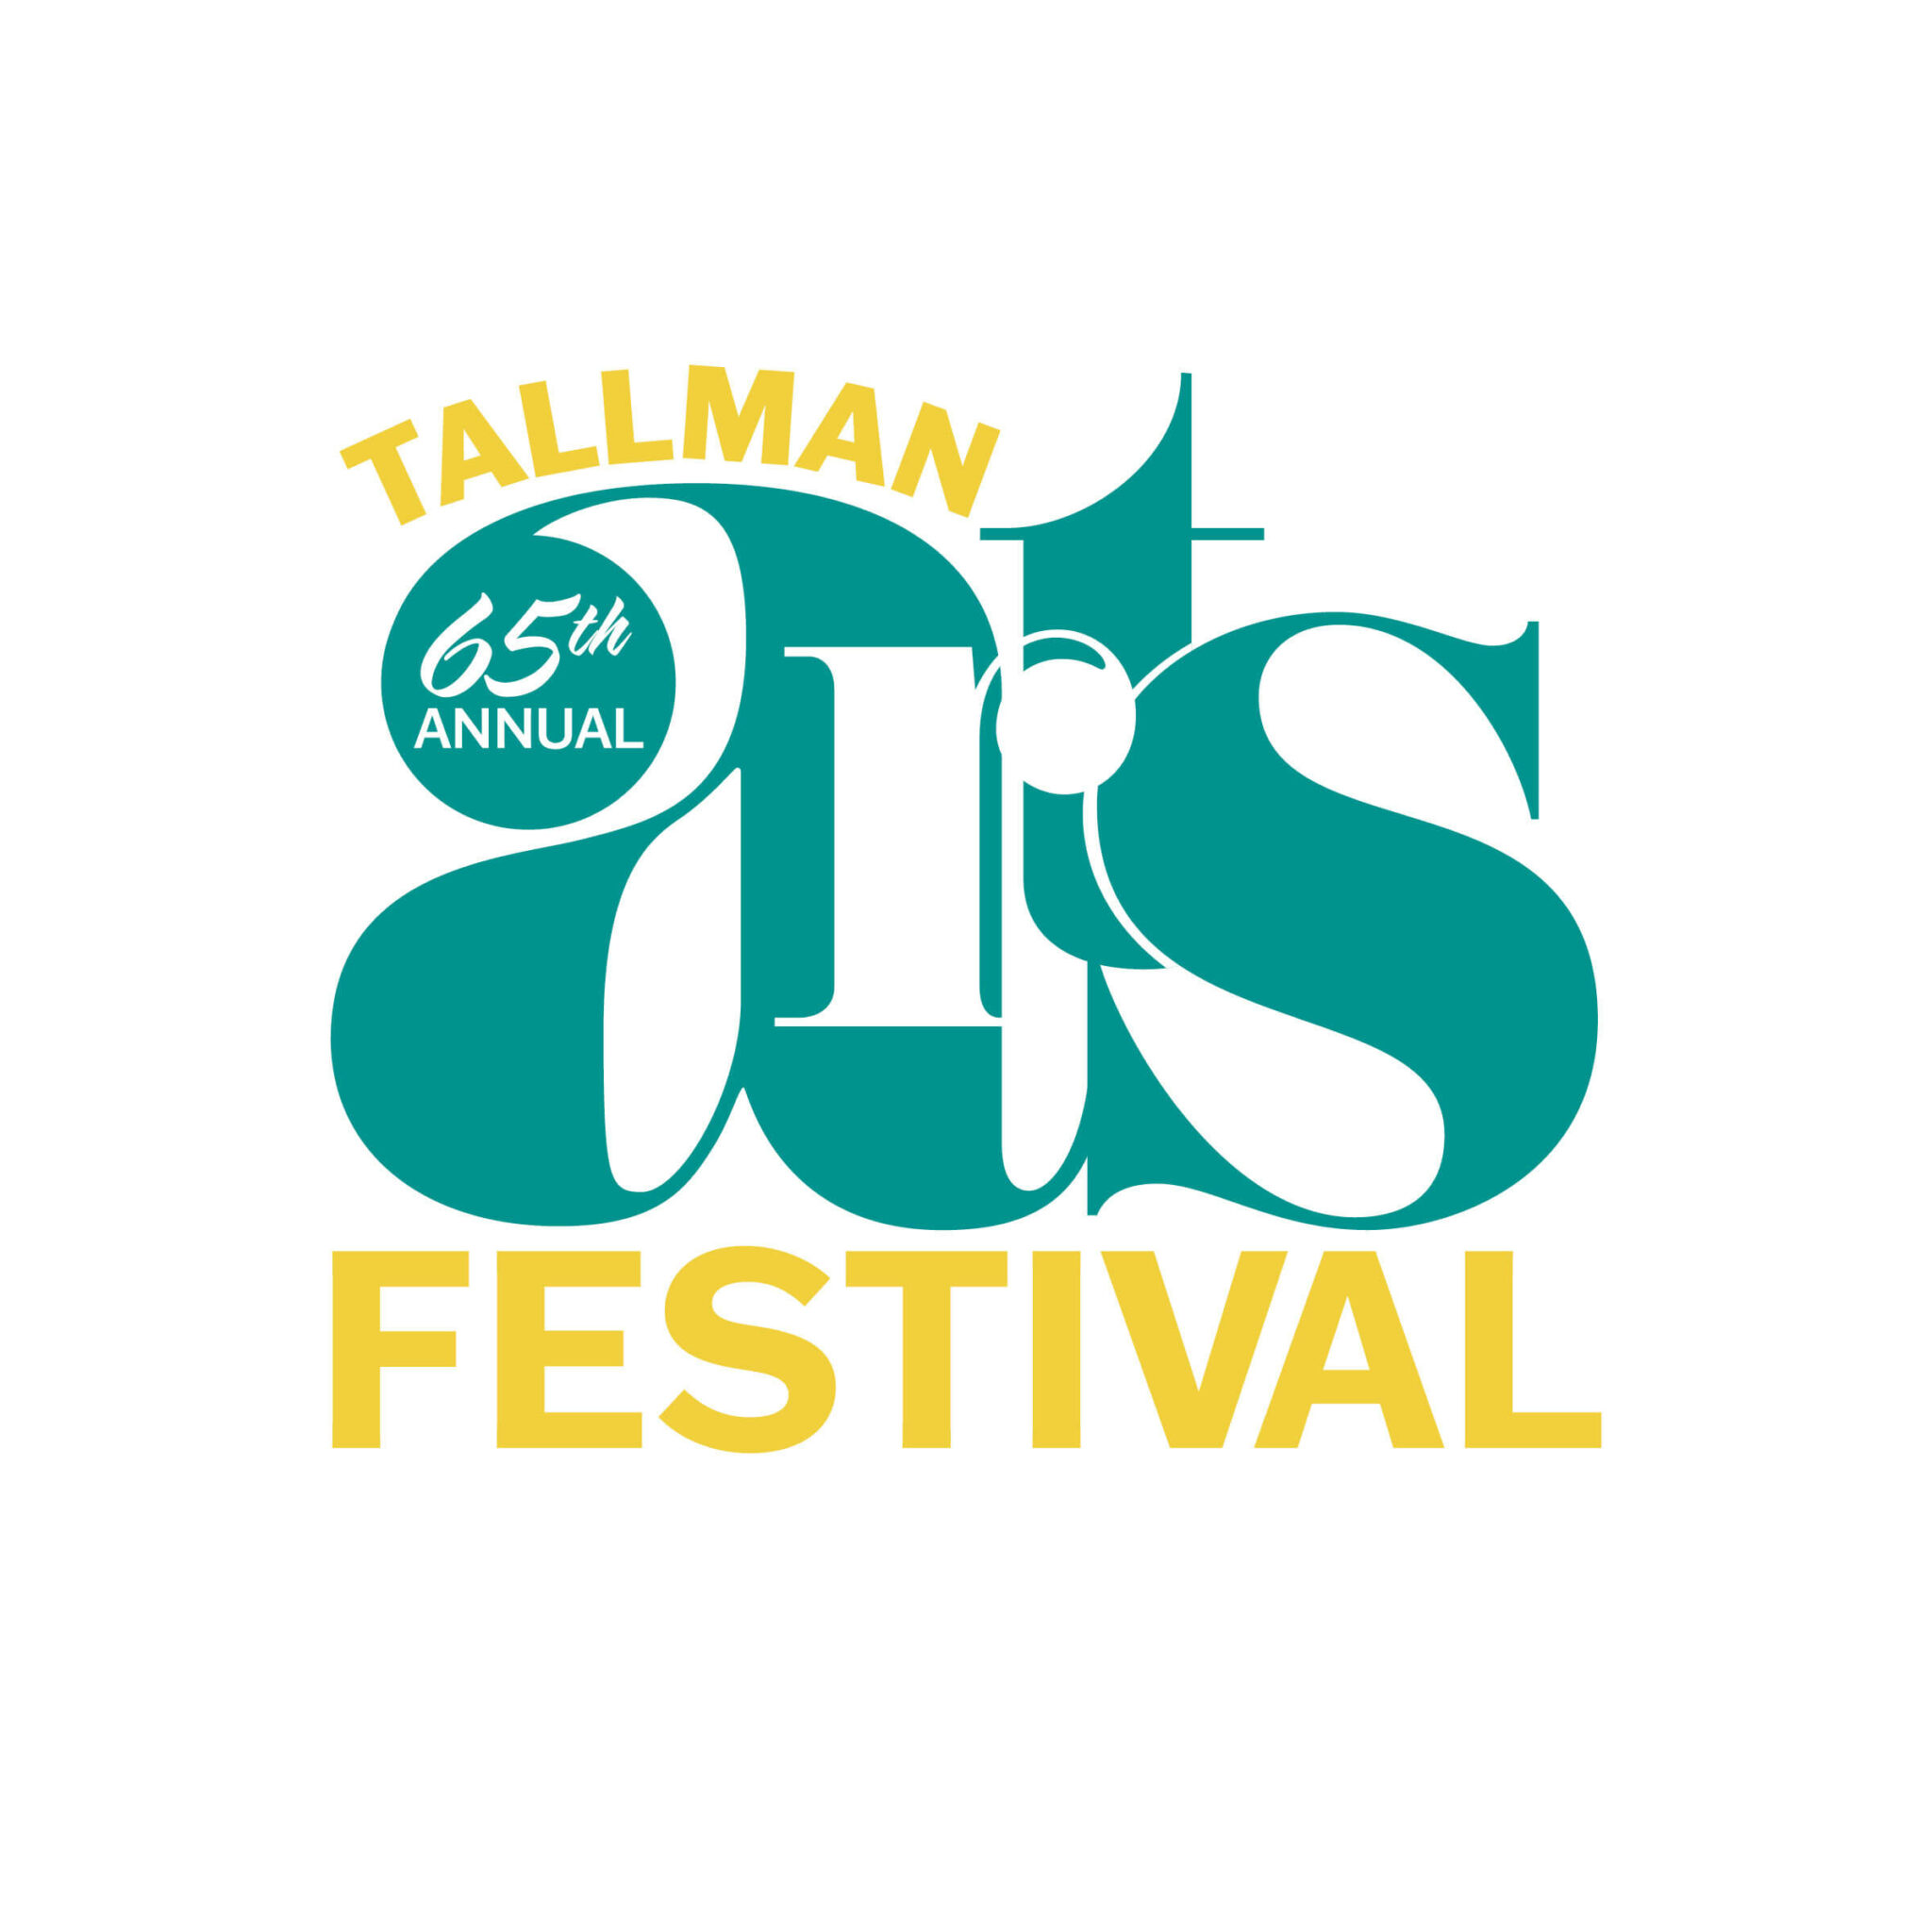 65th Annual Tallman Arts Festival logo